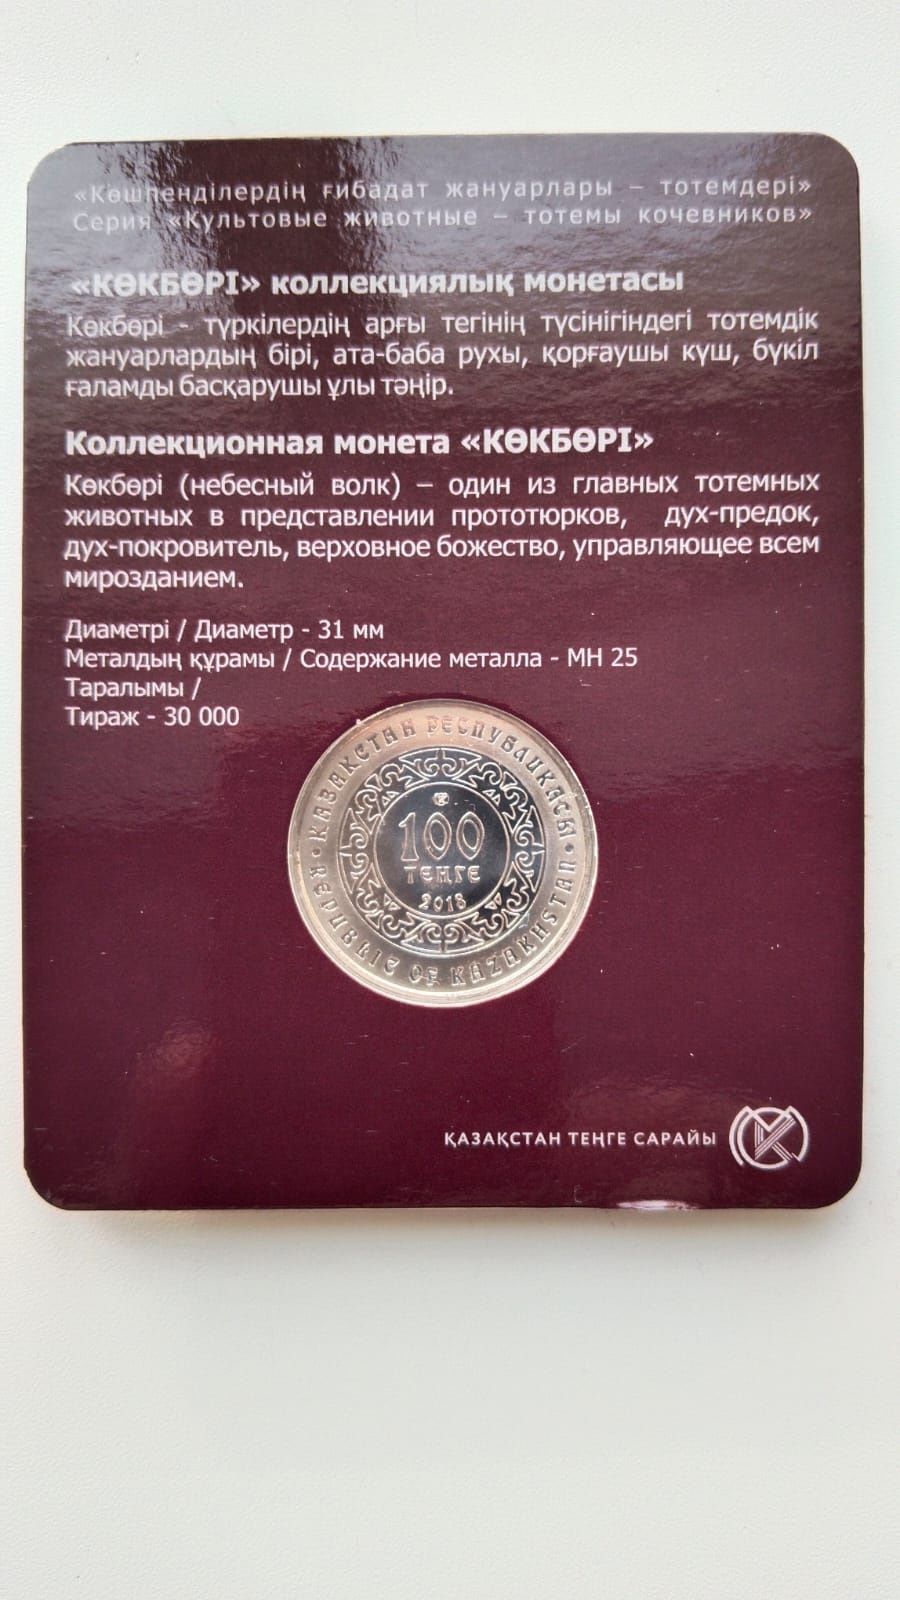 Продам монету Казахстана "Небесный волк"